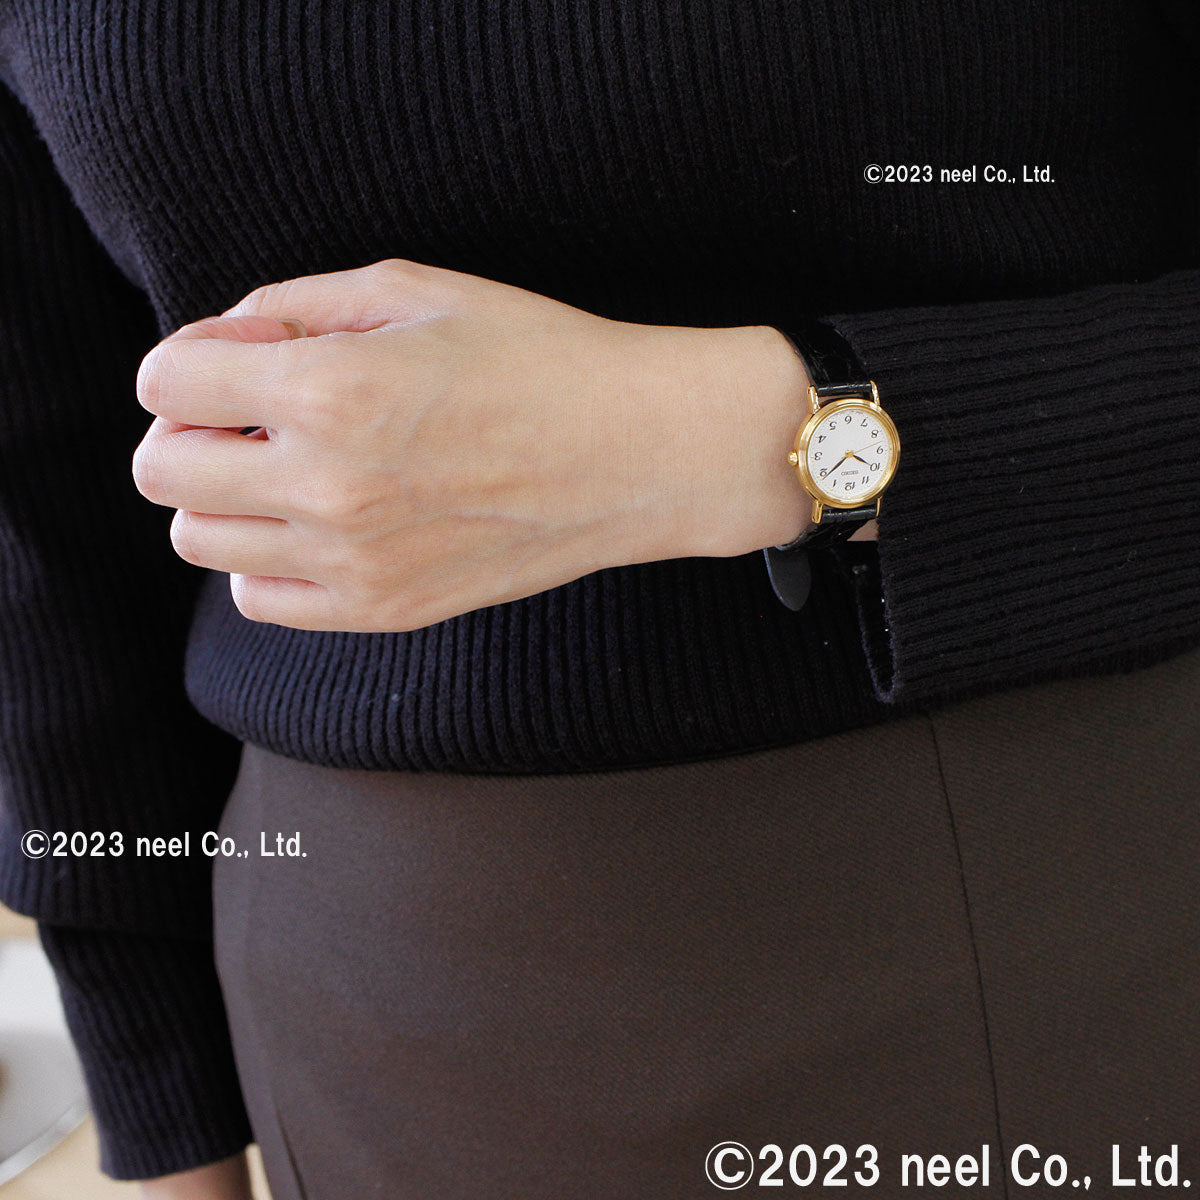 セイコー セレクション SEIKO SELECTION 腕時計 メンズ レディース ペアモデル SCDP030 SSDA030